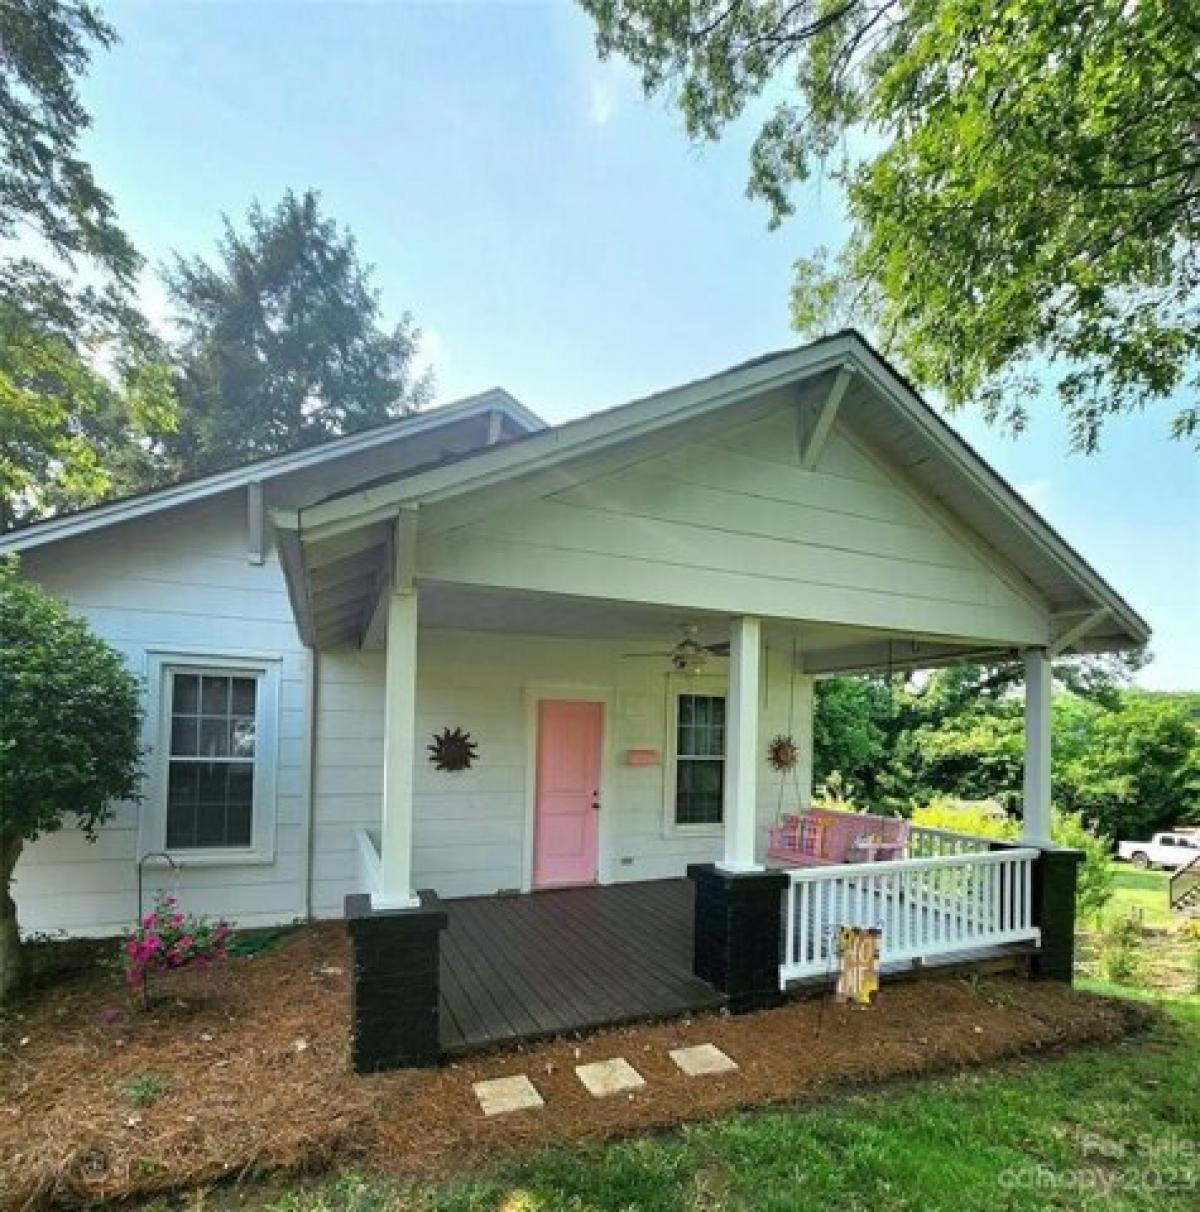 Picture of Home For Sale in Dallas, North Carolina, United States